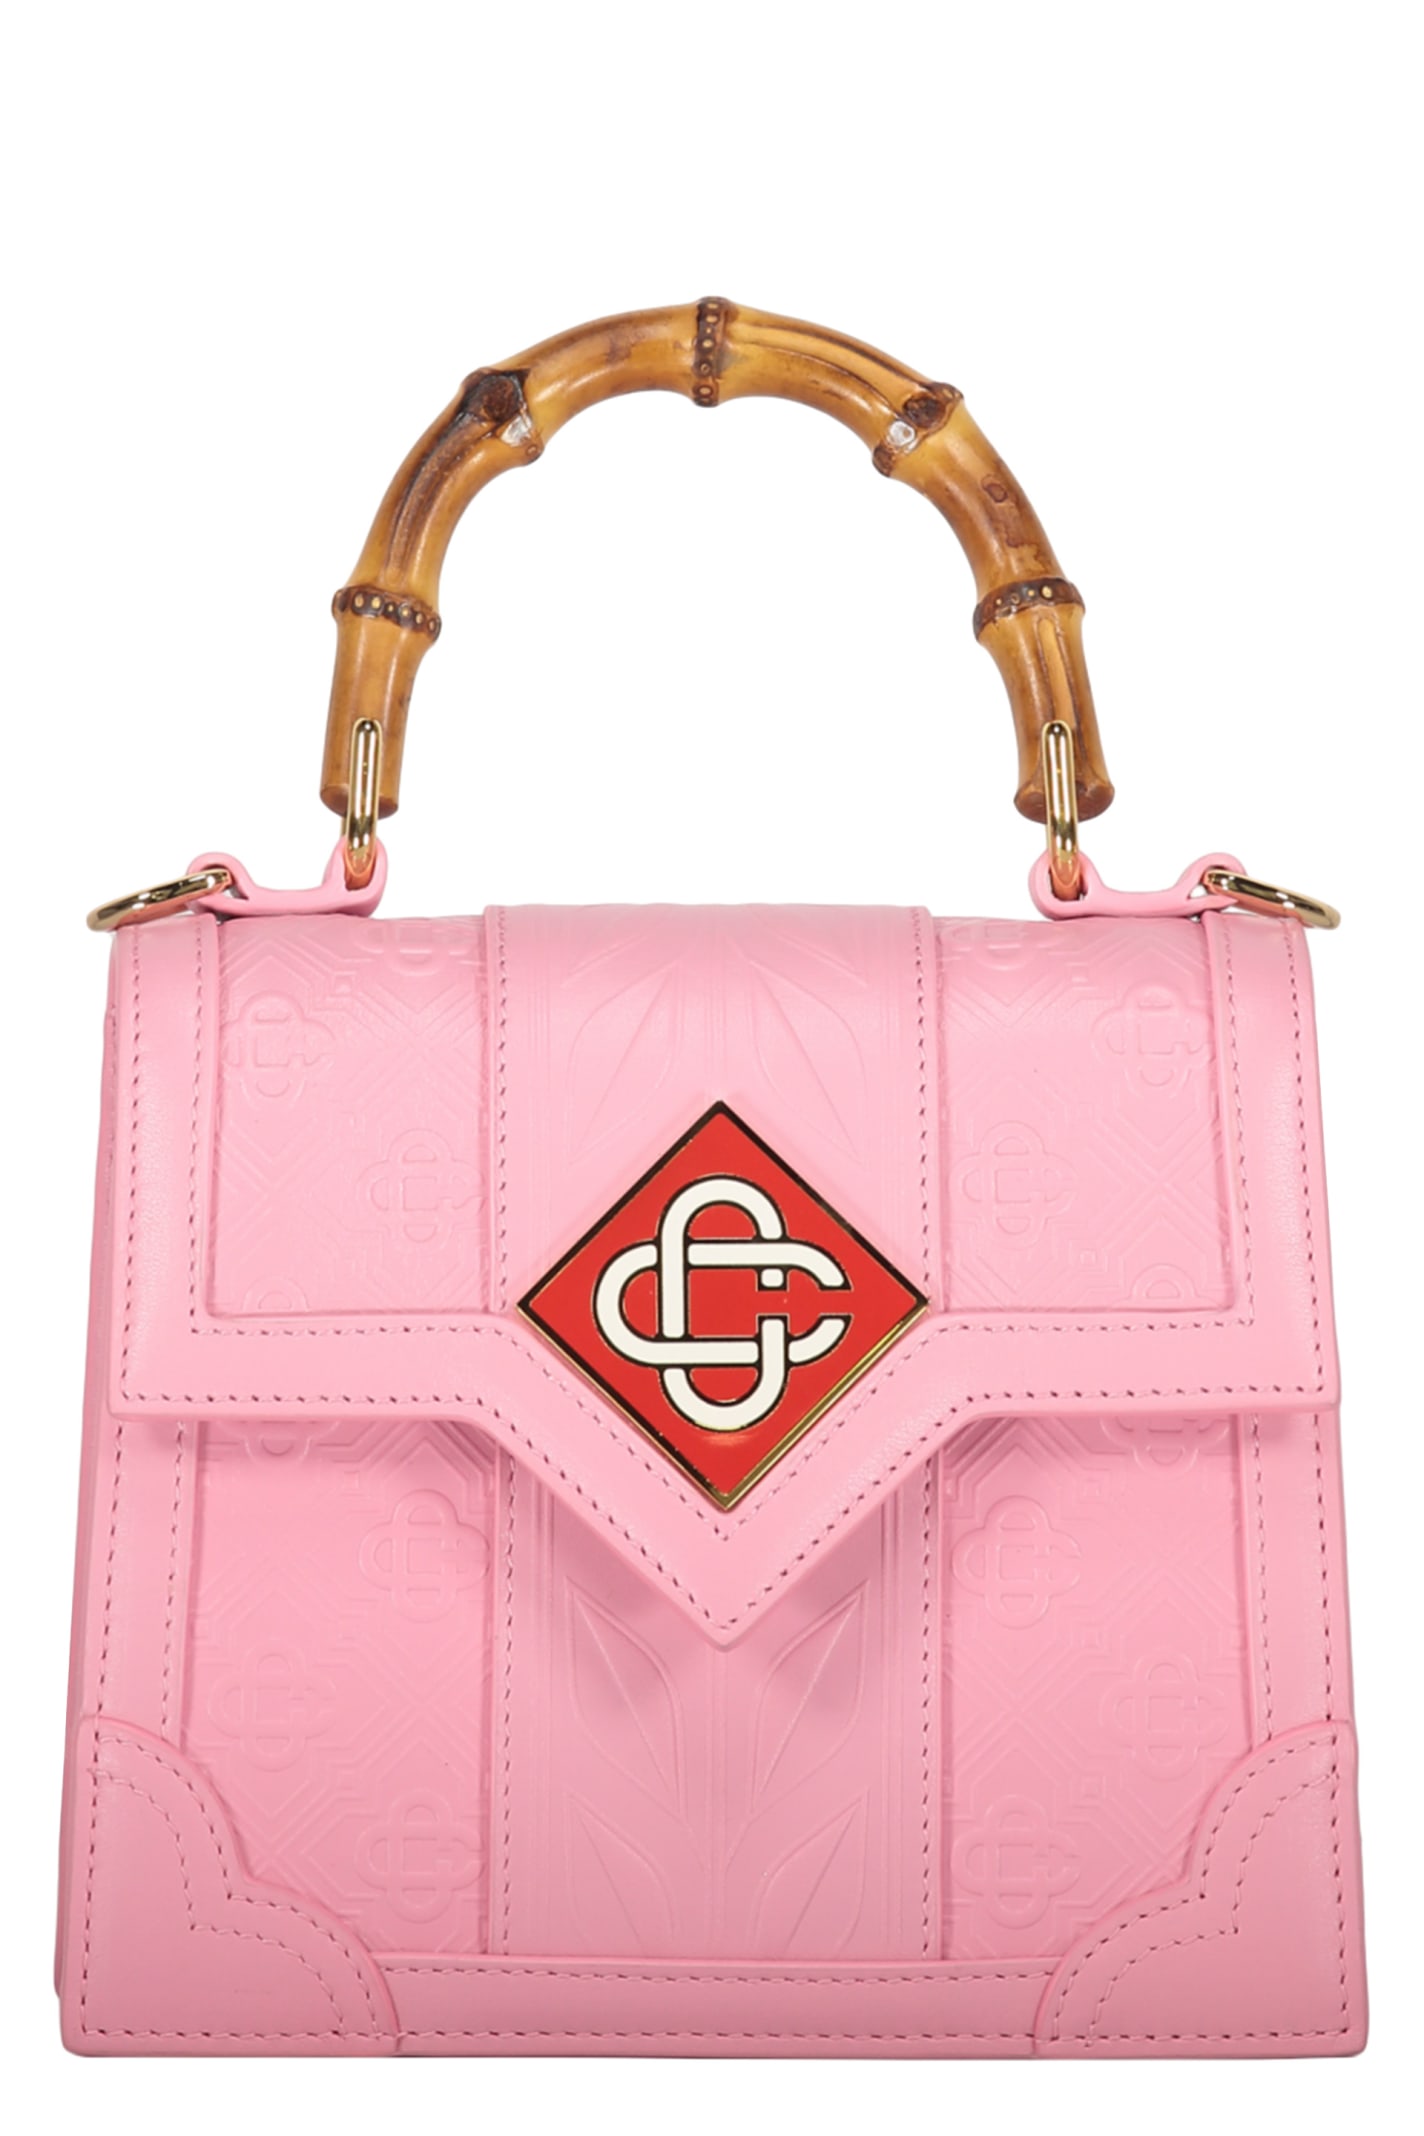 Casablanca Leather Handbag In Pink